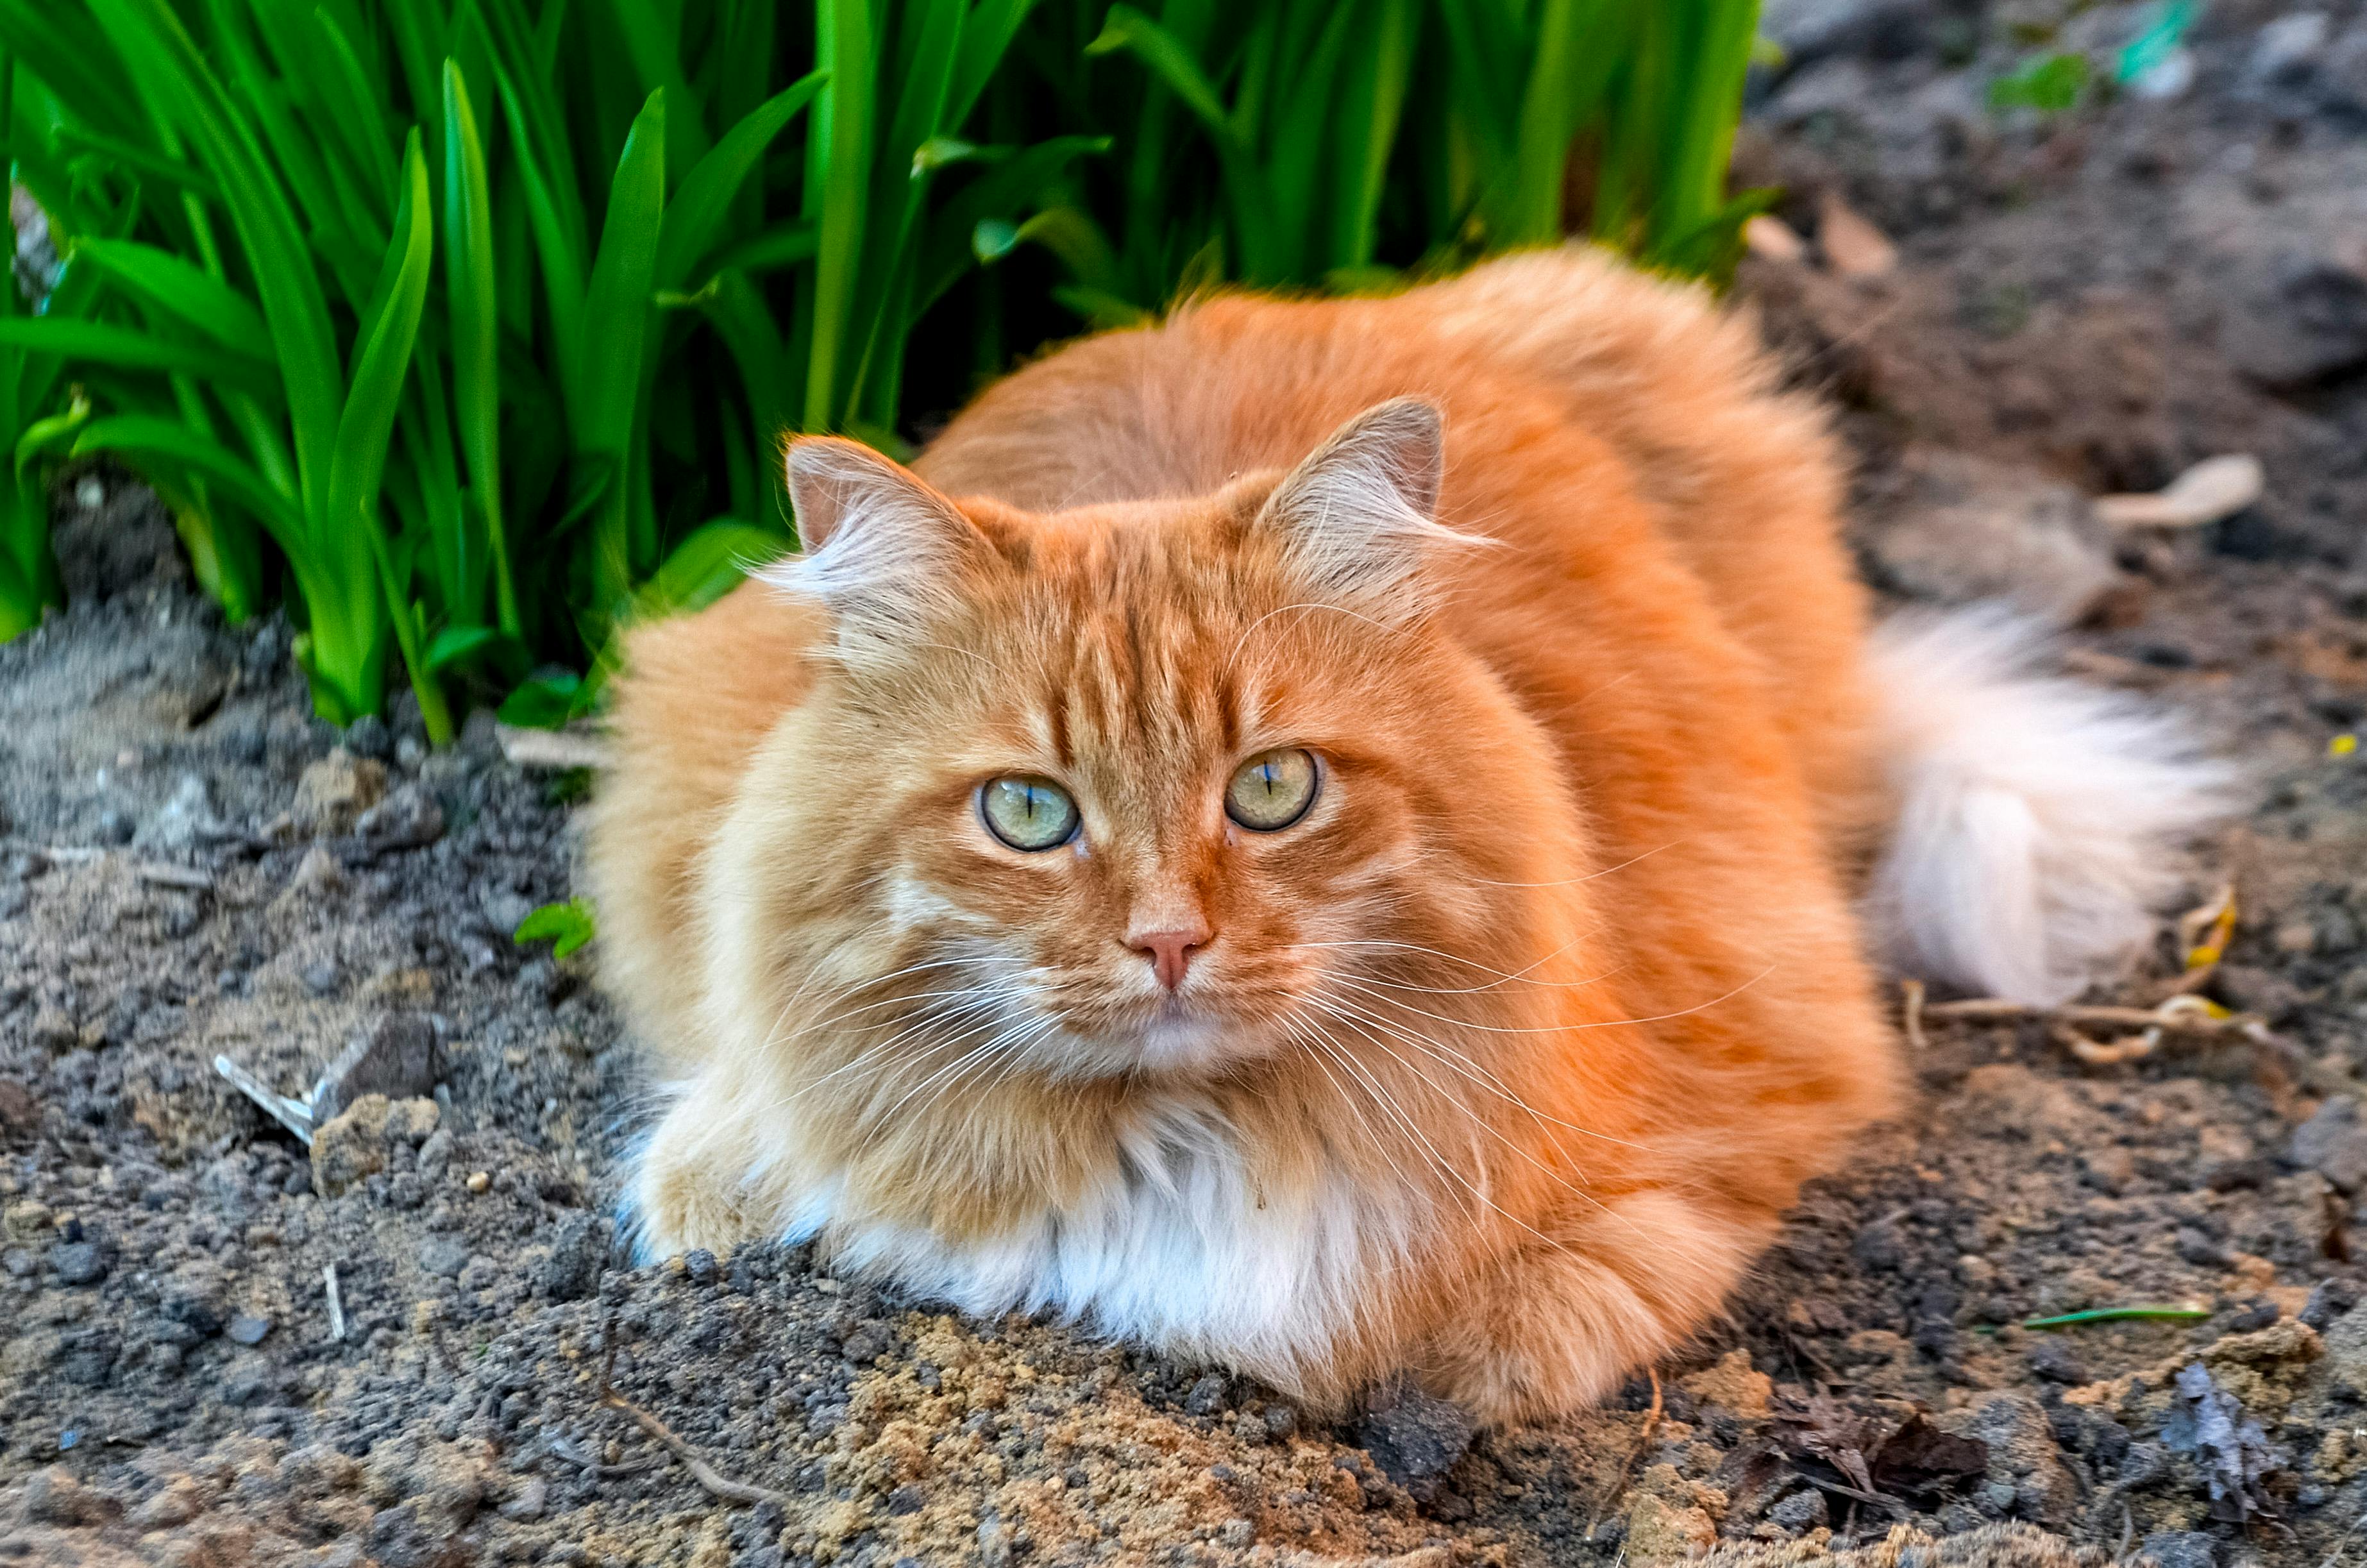 Long Haired Orange Cat Lying on Ground · Free Stock Photo